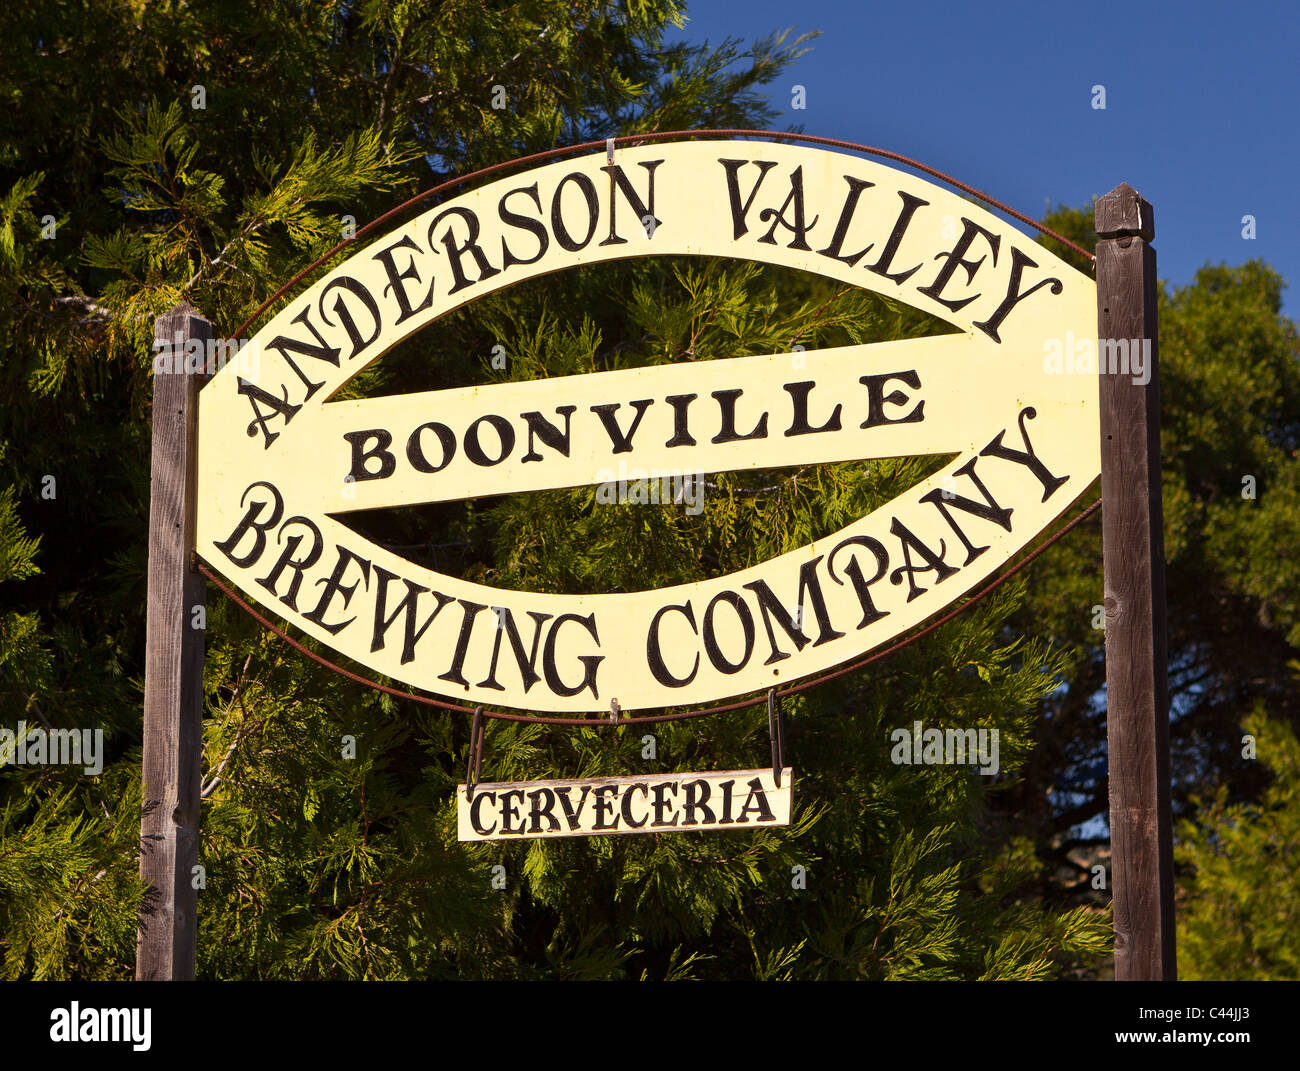 BOONVILLE, CALIFORNIA, STATI UNITI D'AMERICA - Anderson Valley Brewing Company firmano a Mendocino County. Foto Stock